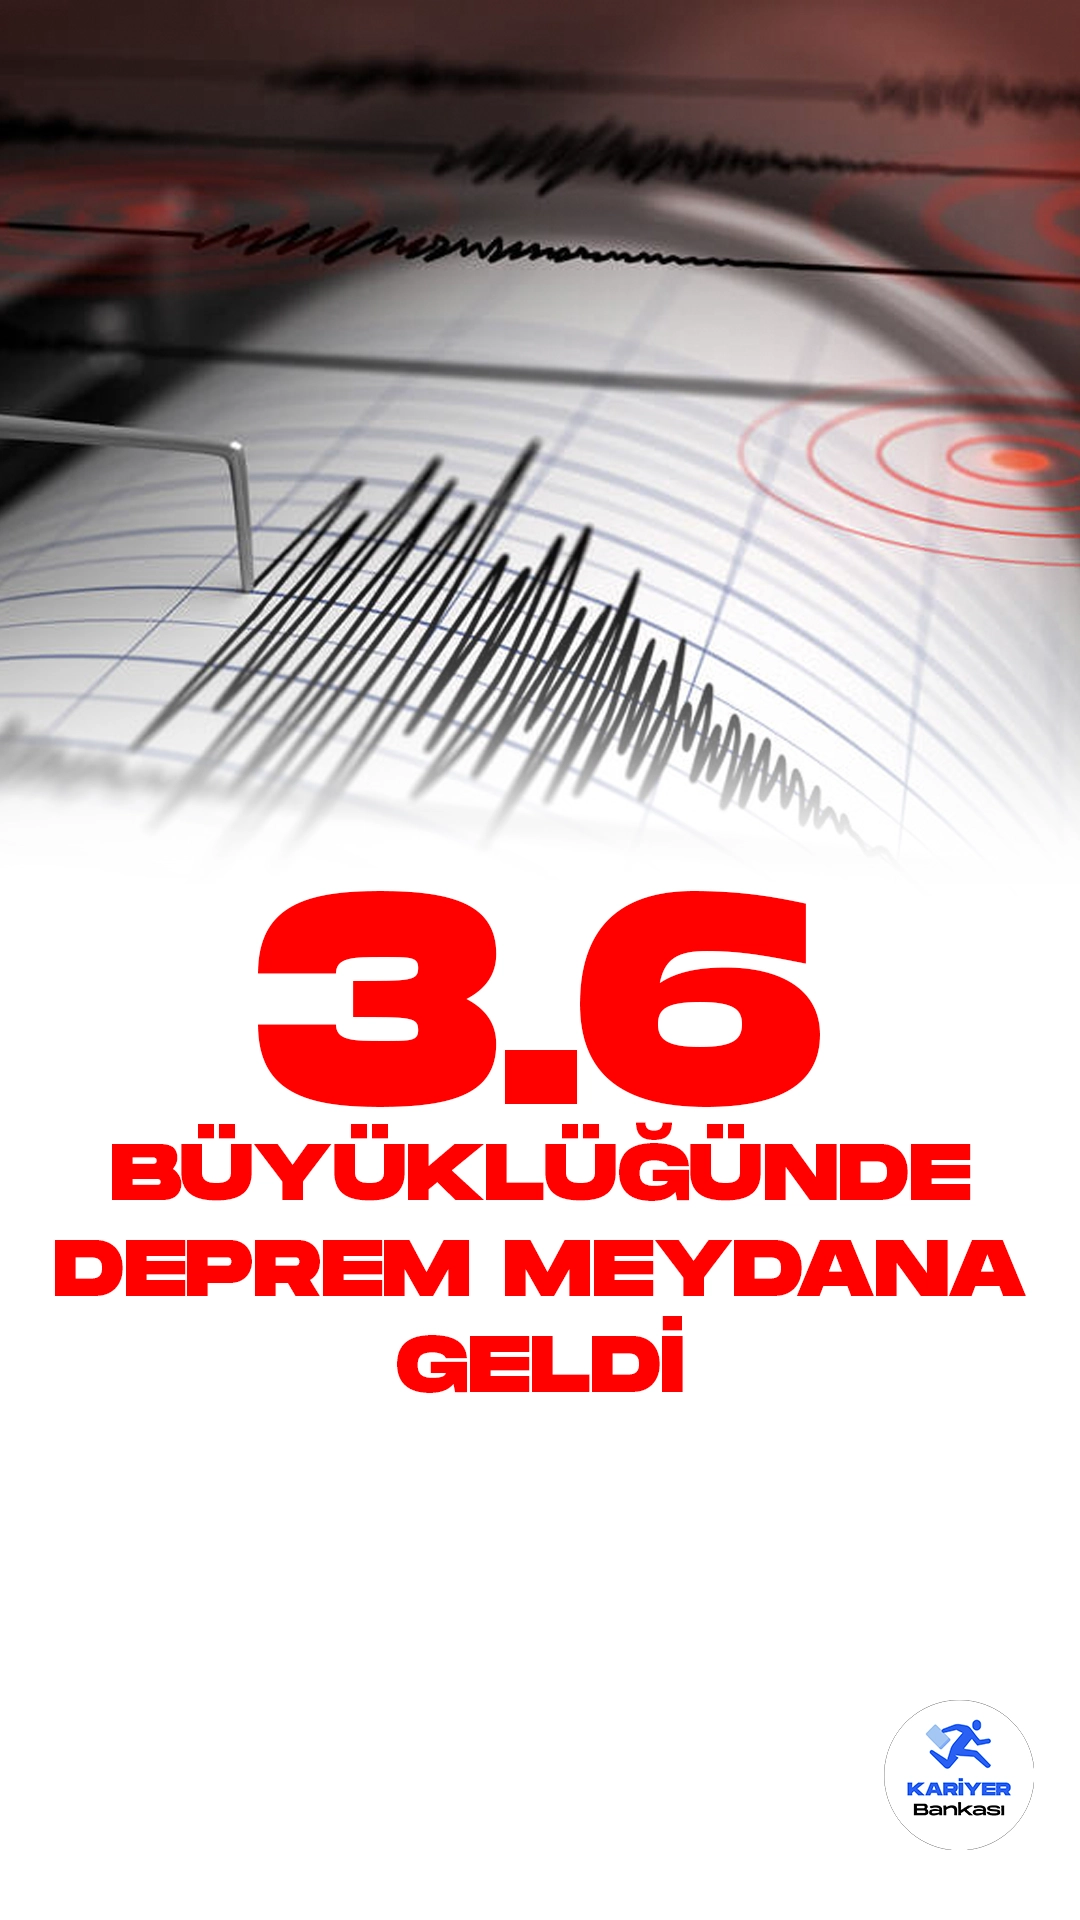 Malatya'da 3.6 Büyüklüğünde Deprem Meydana Geldi. İçişleri Bakanlığı Afet ve Acil Durum Yönetimi Başkanlığı sayfası üzerinden yayımlanan verilerde, Malatya'nın Yeşilyurt ilçesinde 3.6 büyüklüğünde deprem meydana geldiği aktarıldı.